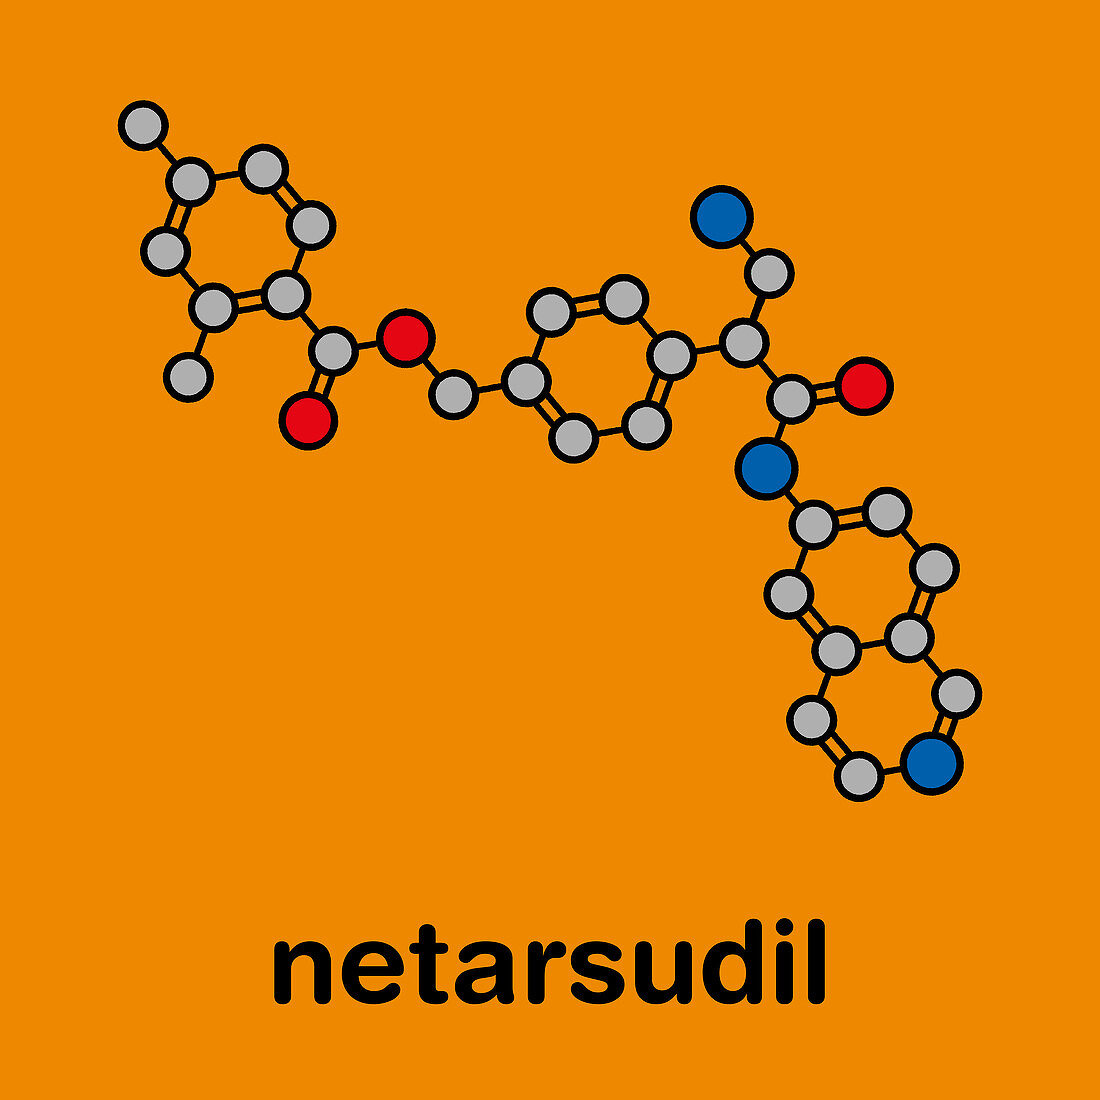 Netarsudil drug molecule, illustration